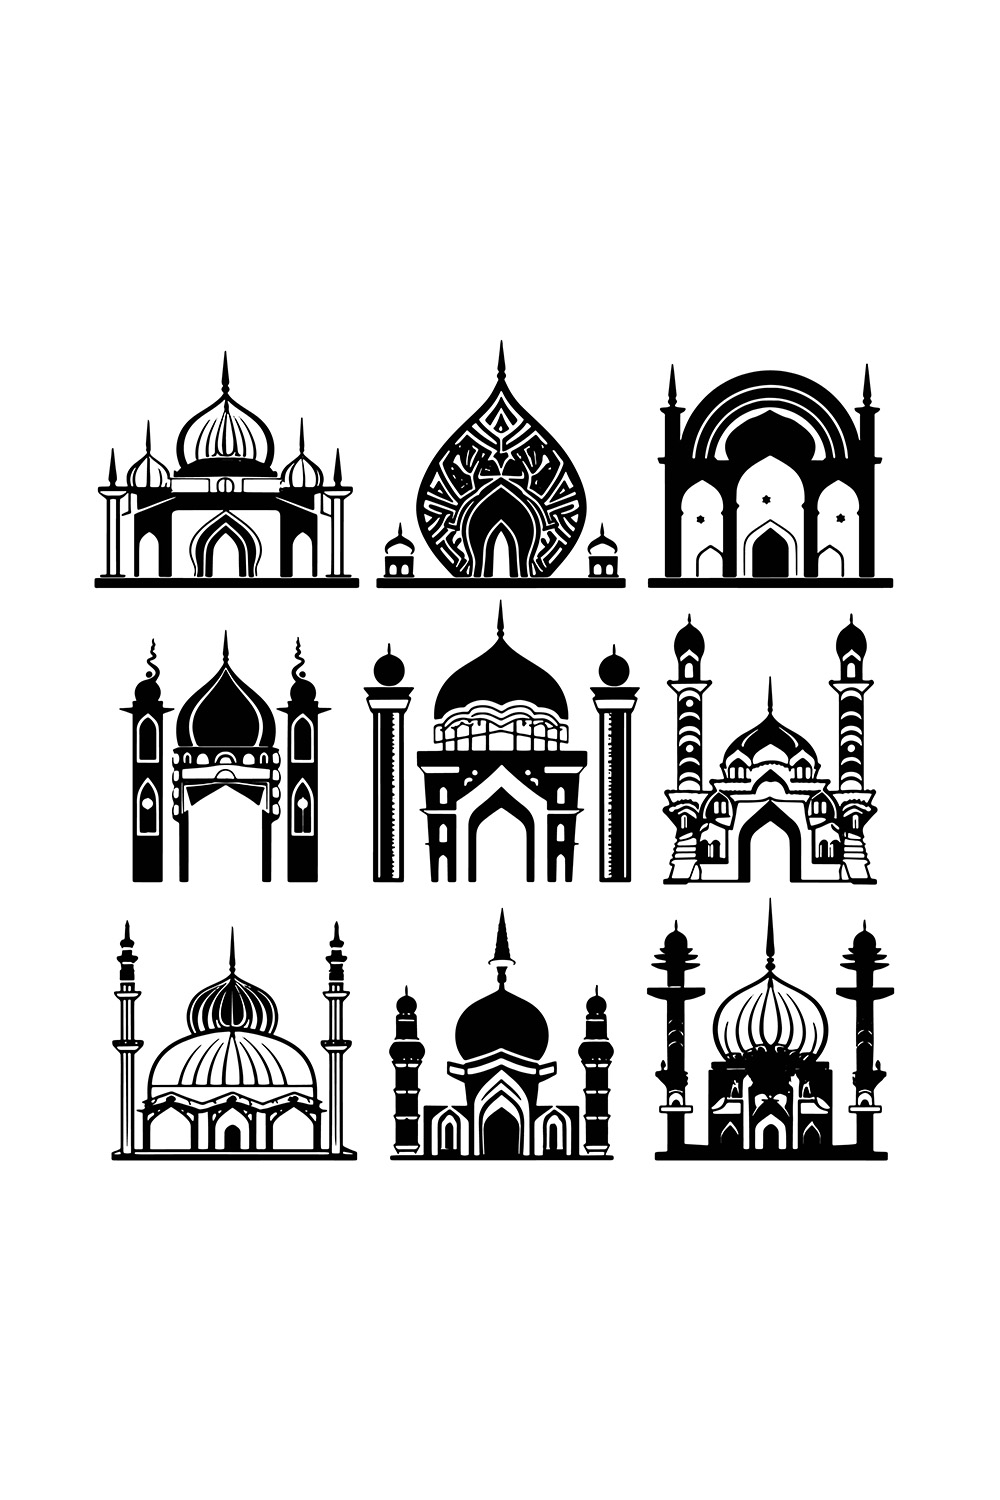 9 Mosque Icons Bundle Set Illustration pinterest preview image.